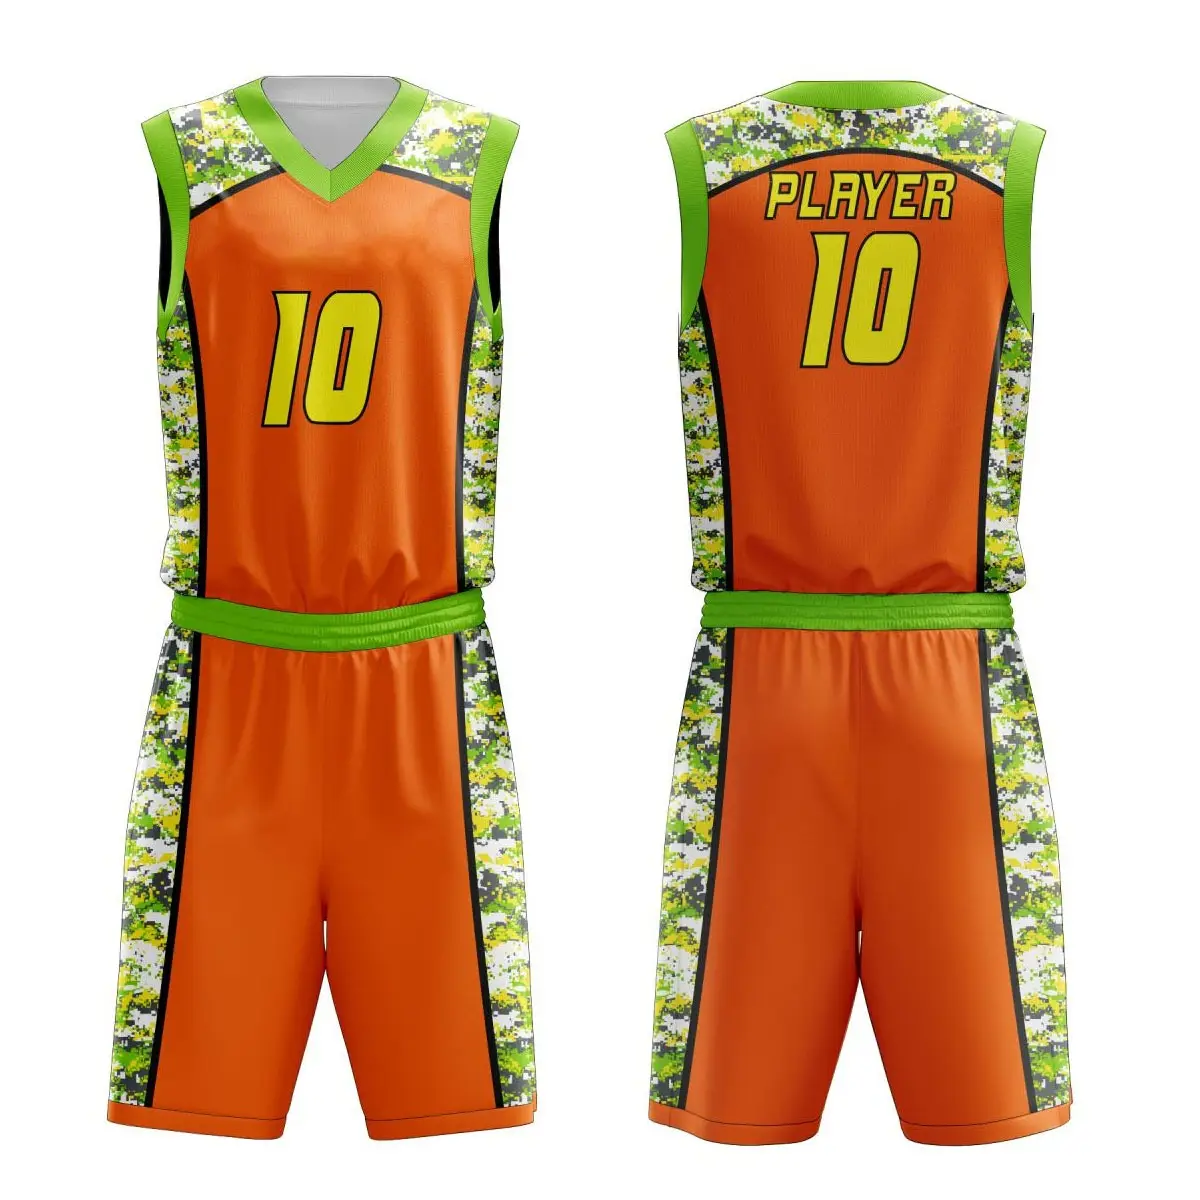 Precio al por mayor, uniforme de baloncesto personalizado sublimado, nuevo diseño, uniforme de béisbol impreso, uniforme de pelota de baloncesto deportivo